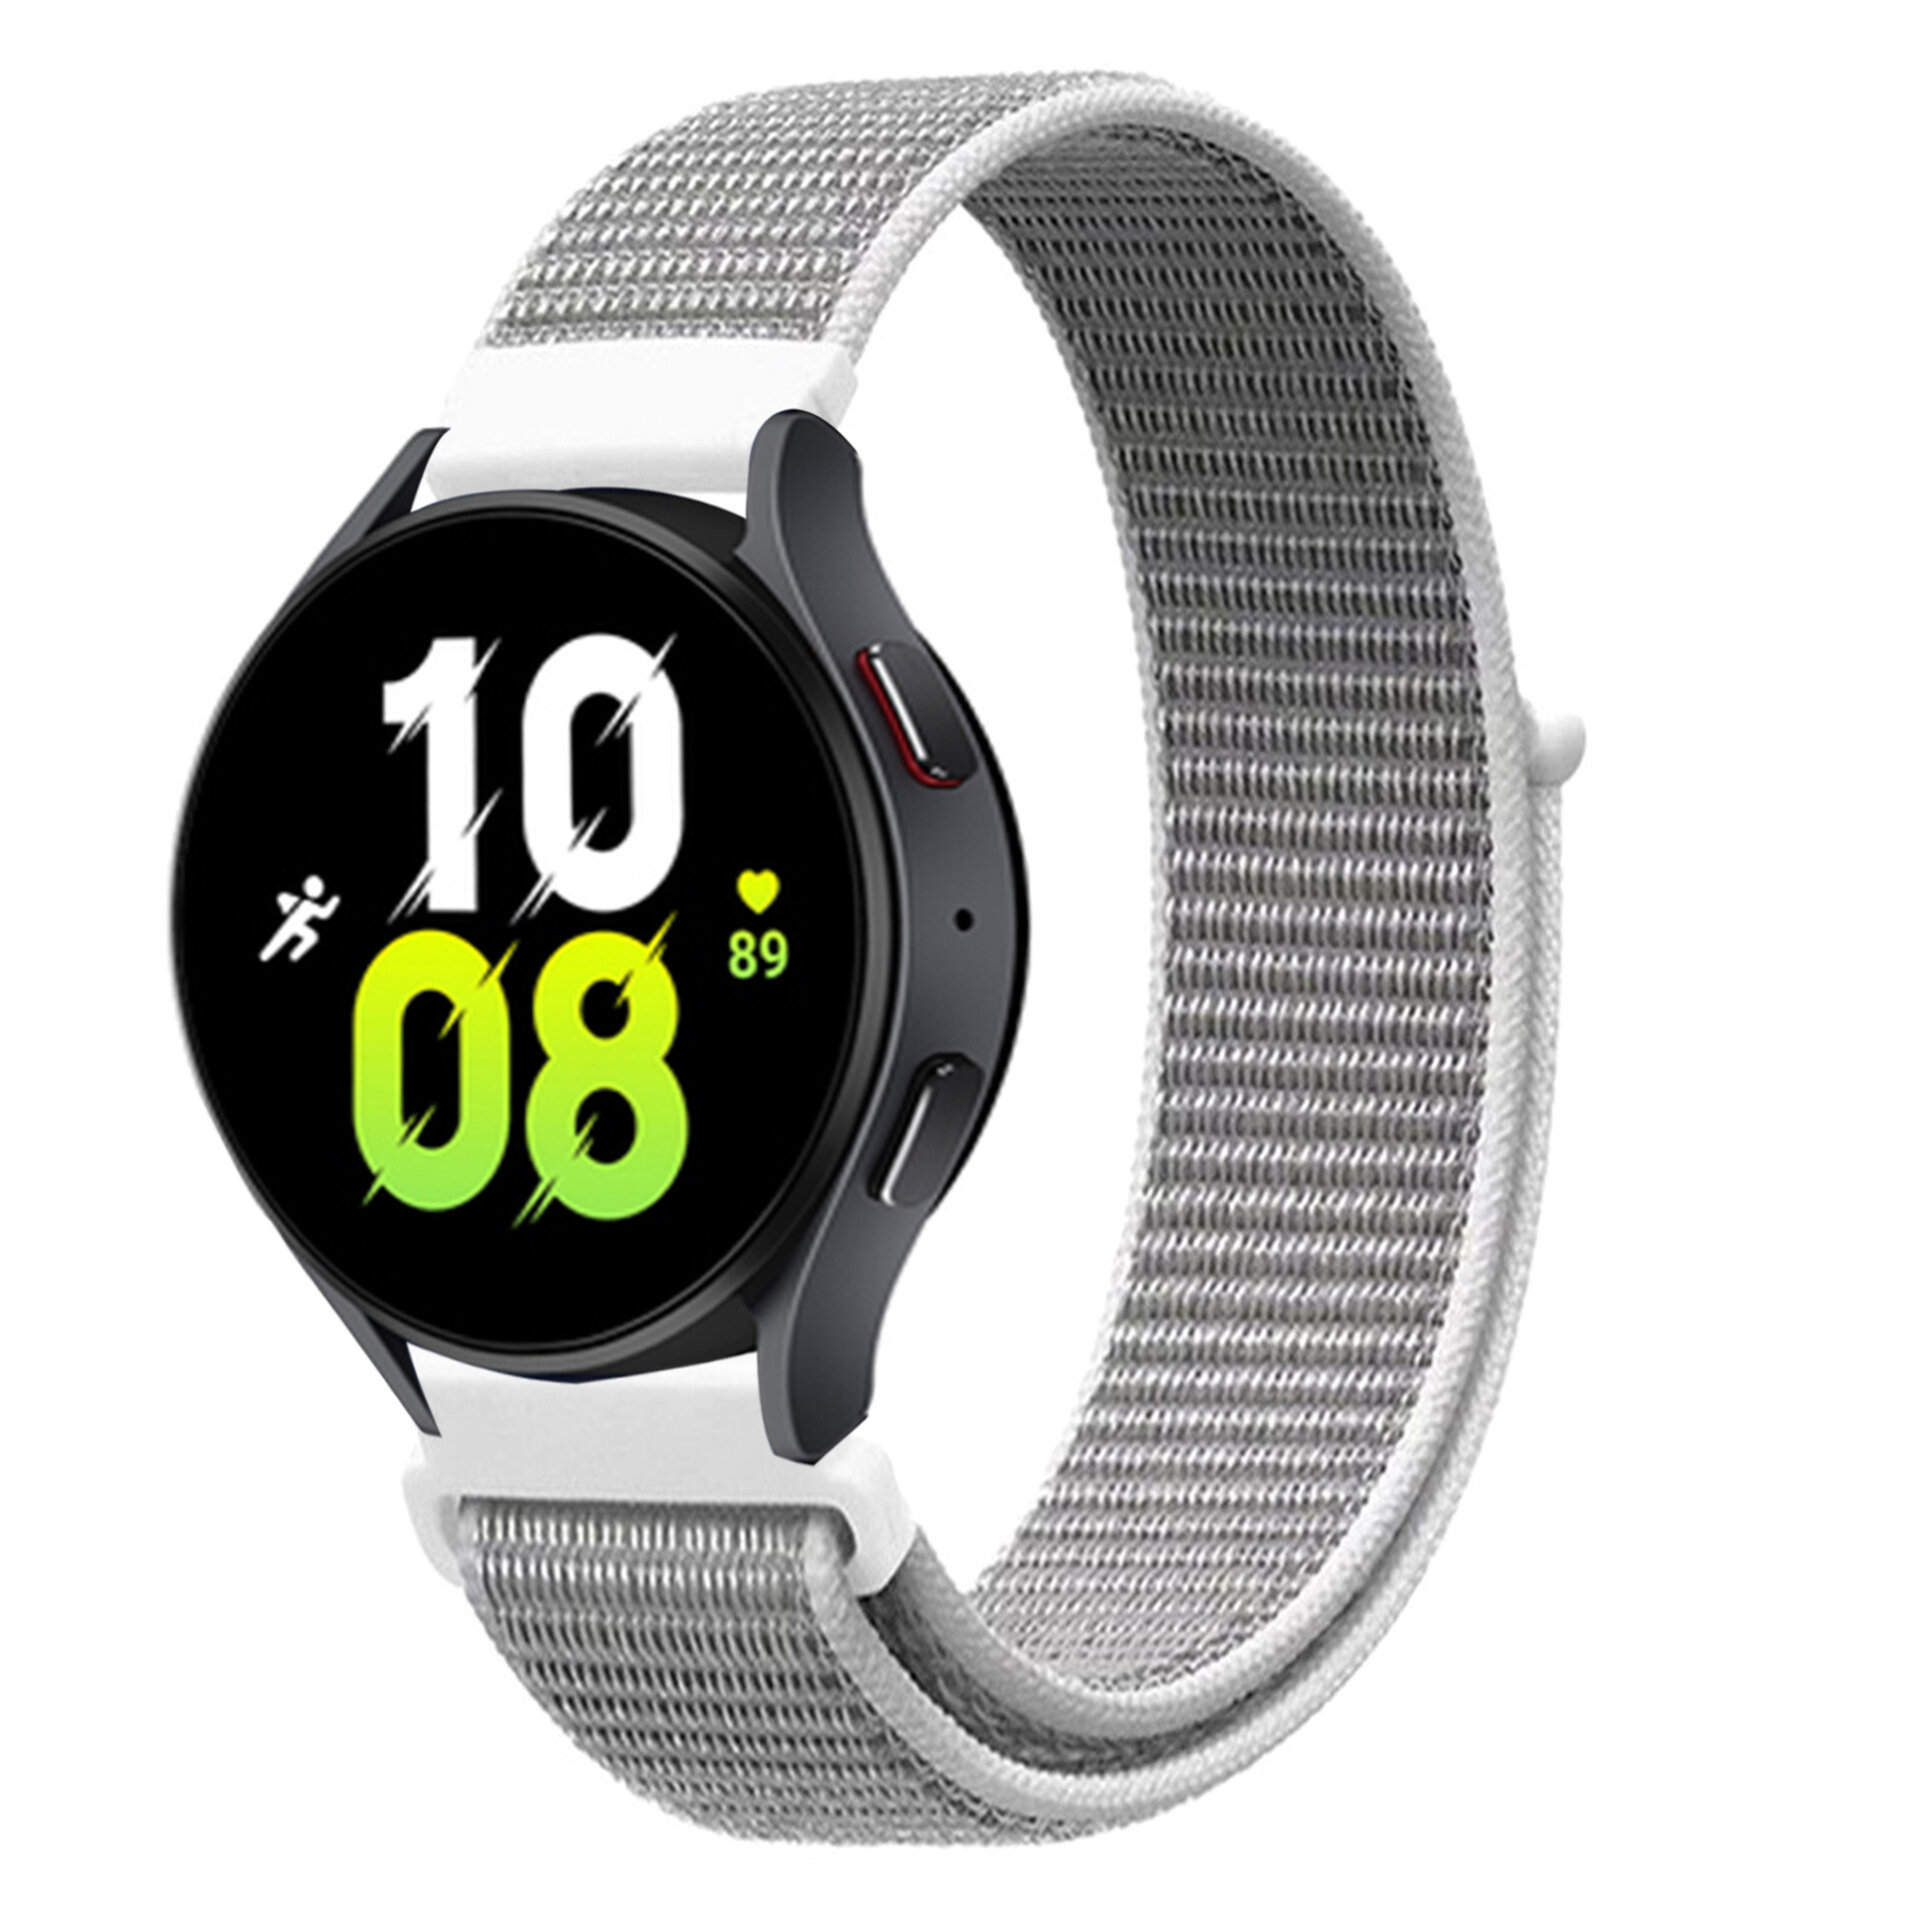 Нейлоновый универсальный ремешок 22 мм для смарт-часов Garmin, Samsung Galaxy Watch, Huawei Watch, Honor, Xiaomi Amazfit, 06 бело-серый